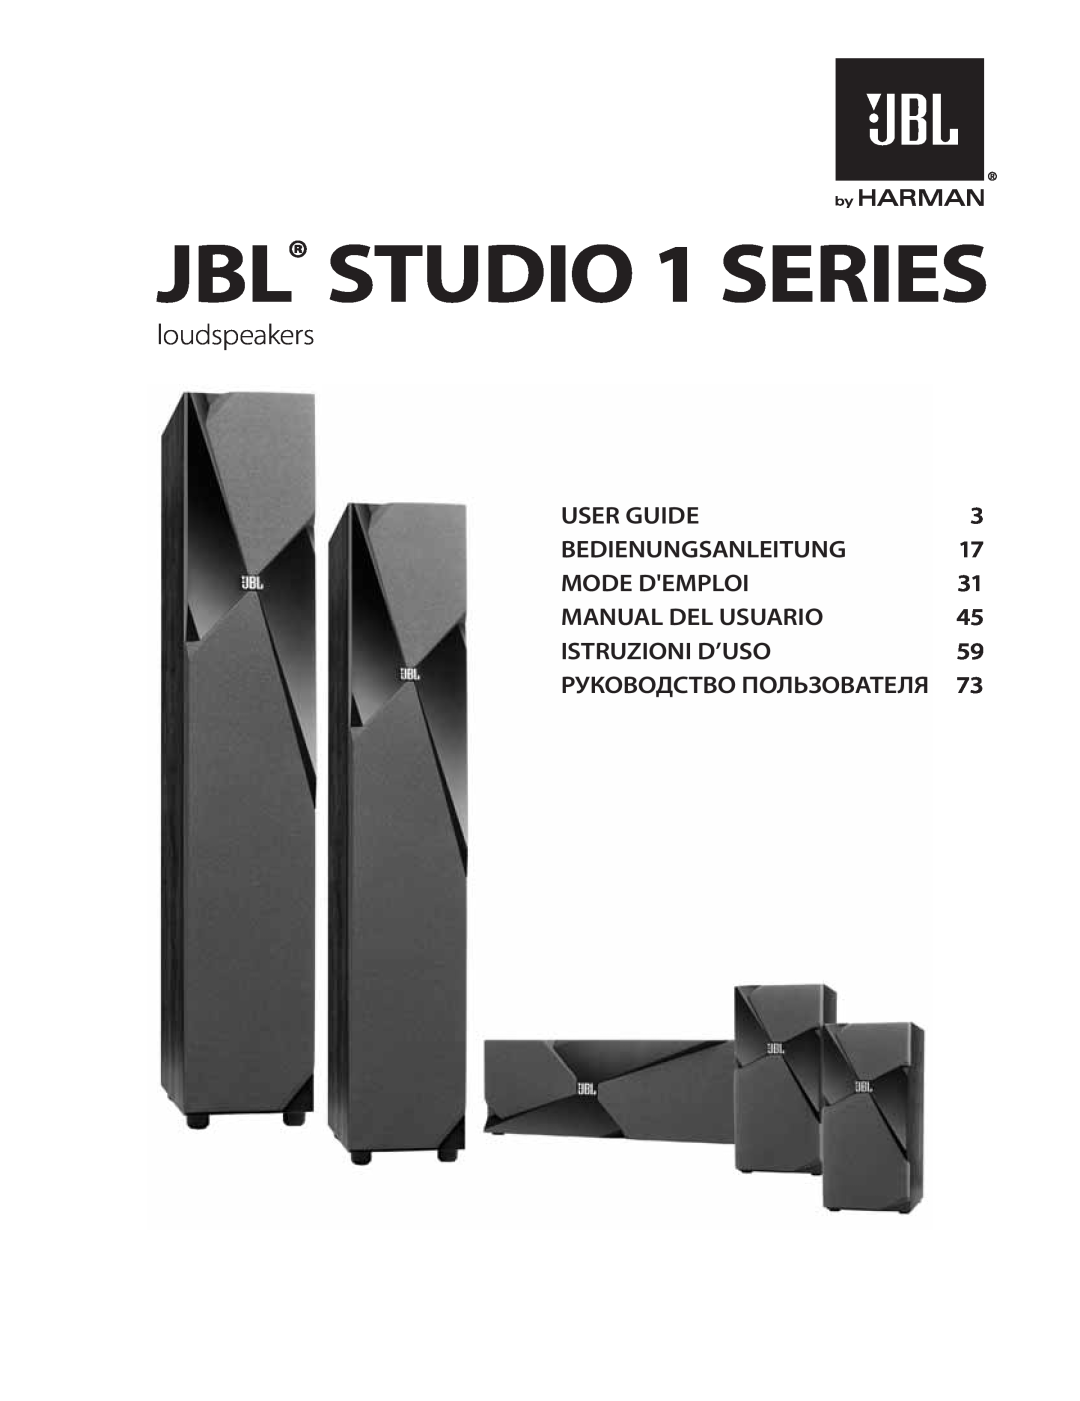 JBL STUDIO180 manual JBL STUDIO 1 SERIES, loudspeakers, User Guide, Bedienungsanleitung, Mode Demploi, Manual Del Usuario 